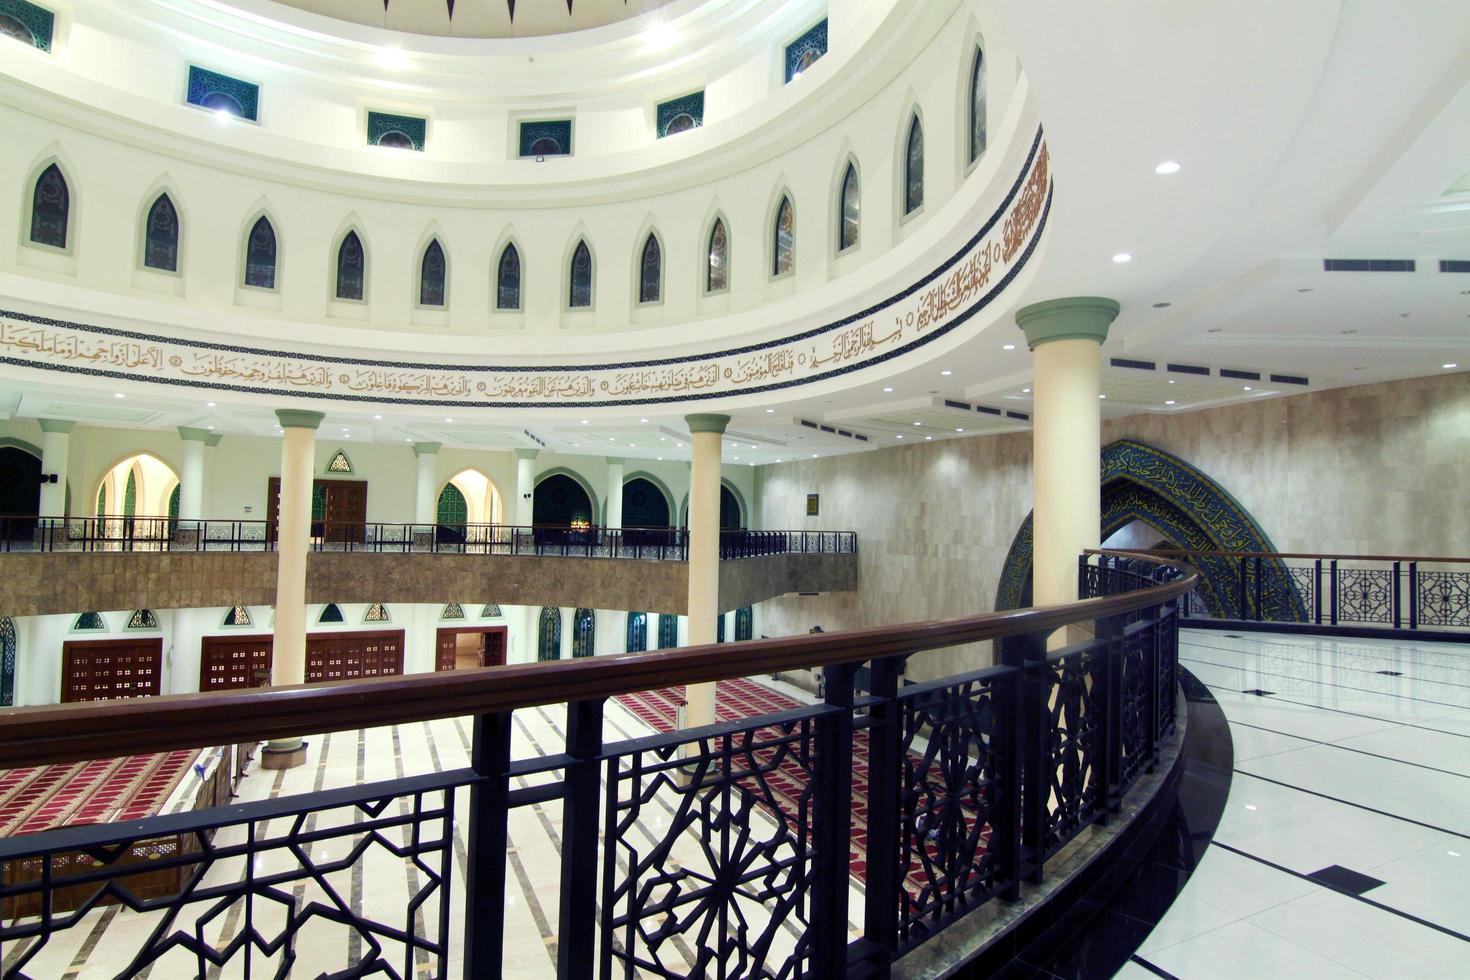 sangatta, bornéo oriental, indonésie, 2020 - architecture intérieure de la mosquée al faruq. l'une des plus grandes mosquées de l'est de Bornéo-Indonésie. photo